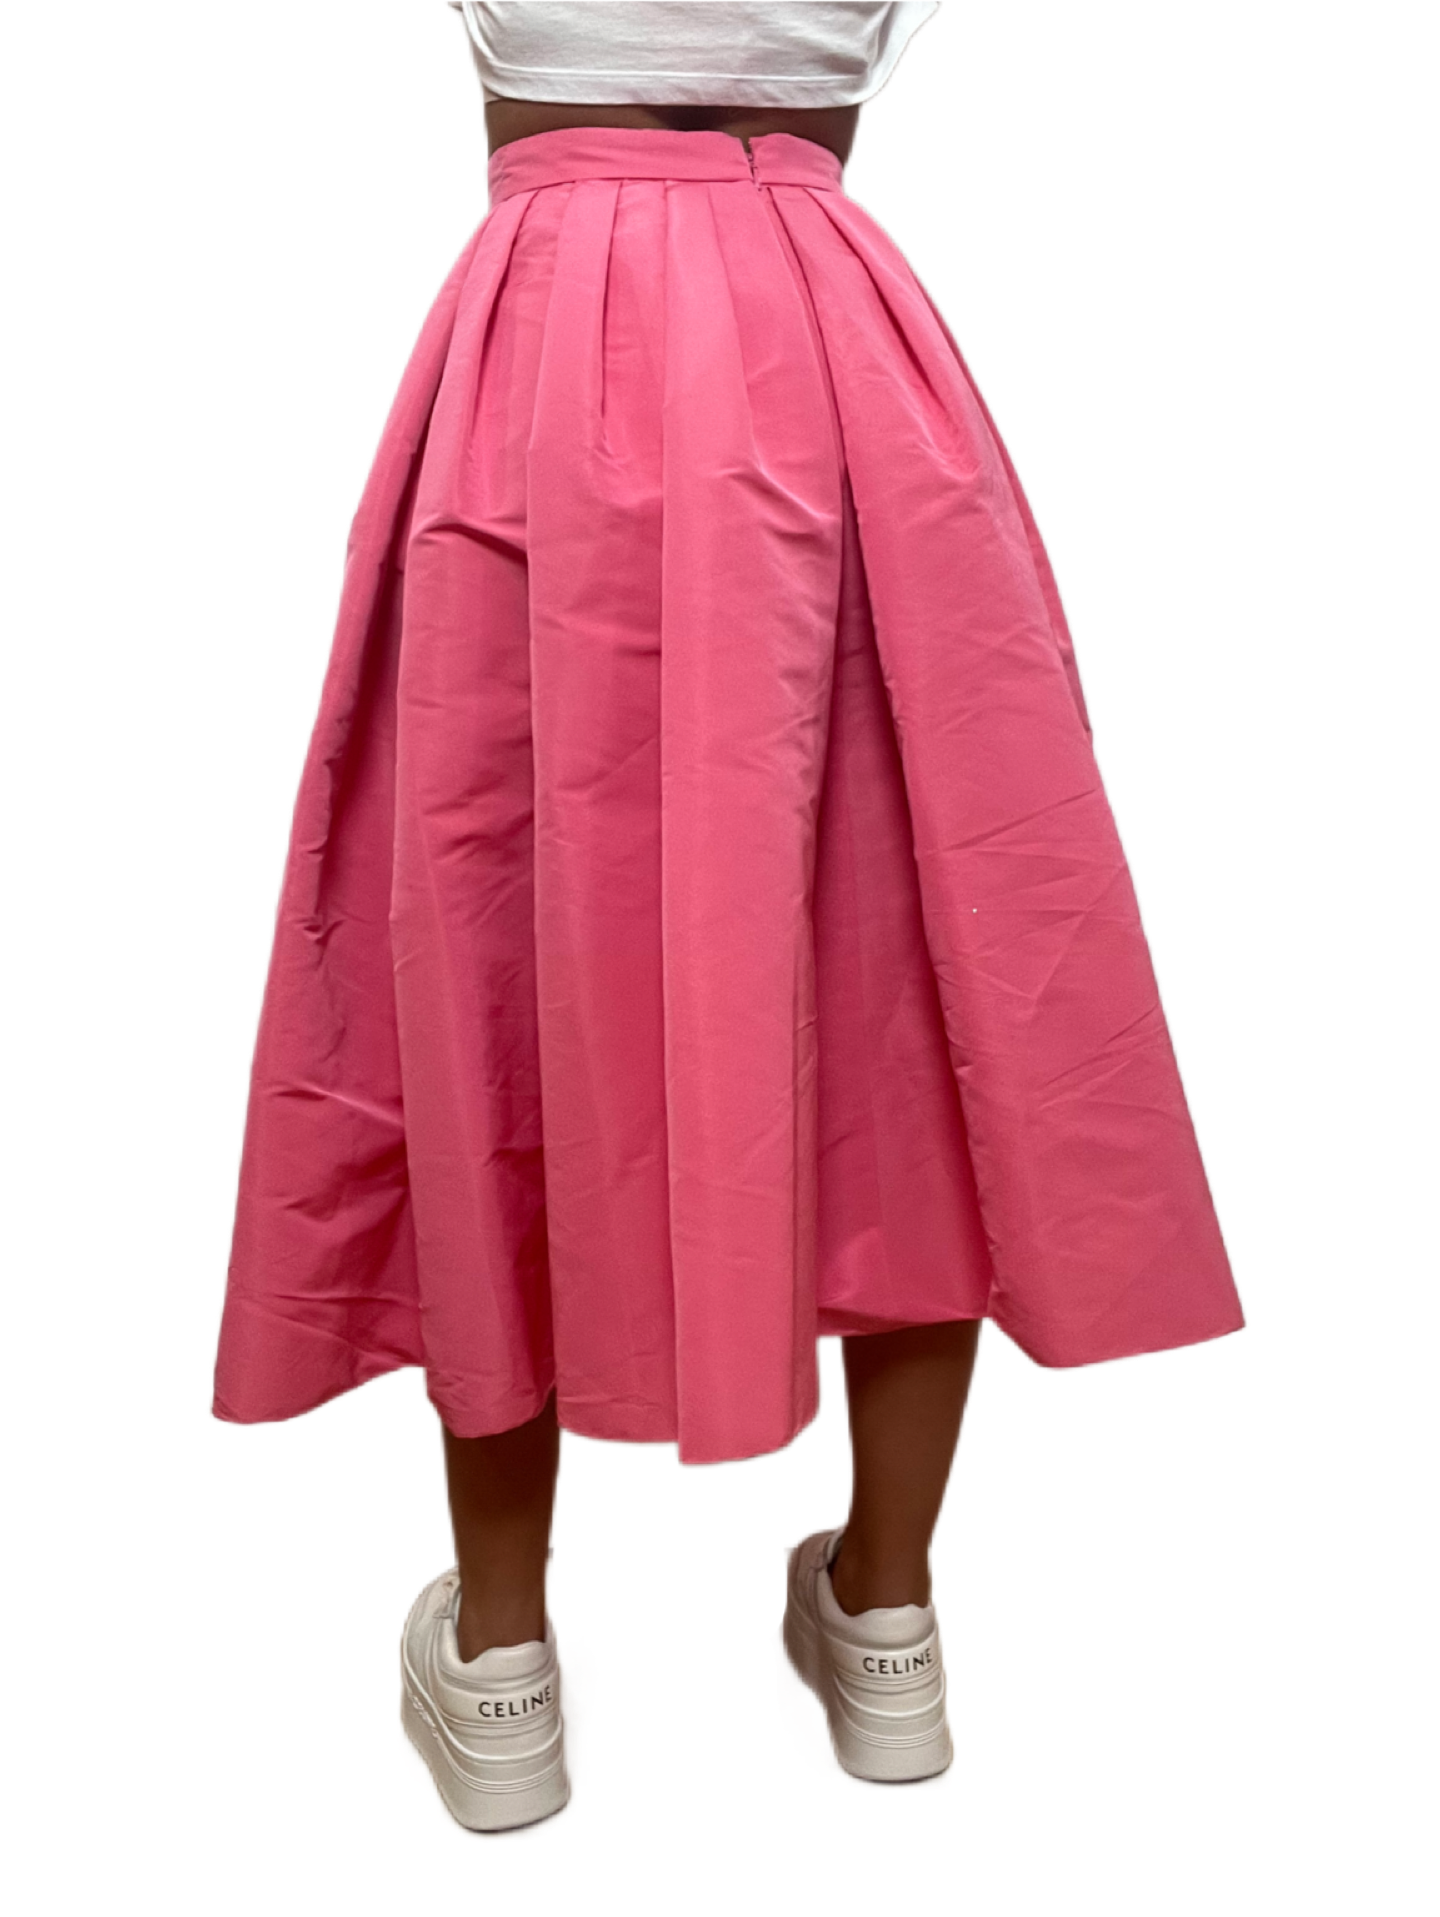 Alexander McQueen Pink 3/4 Length Skirt. Size: 40